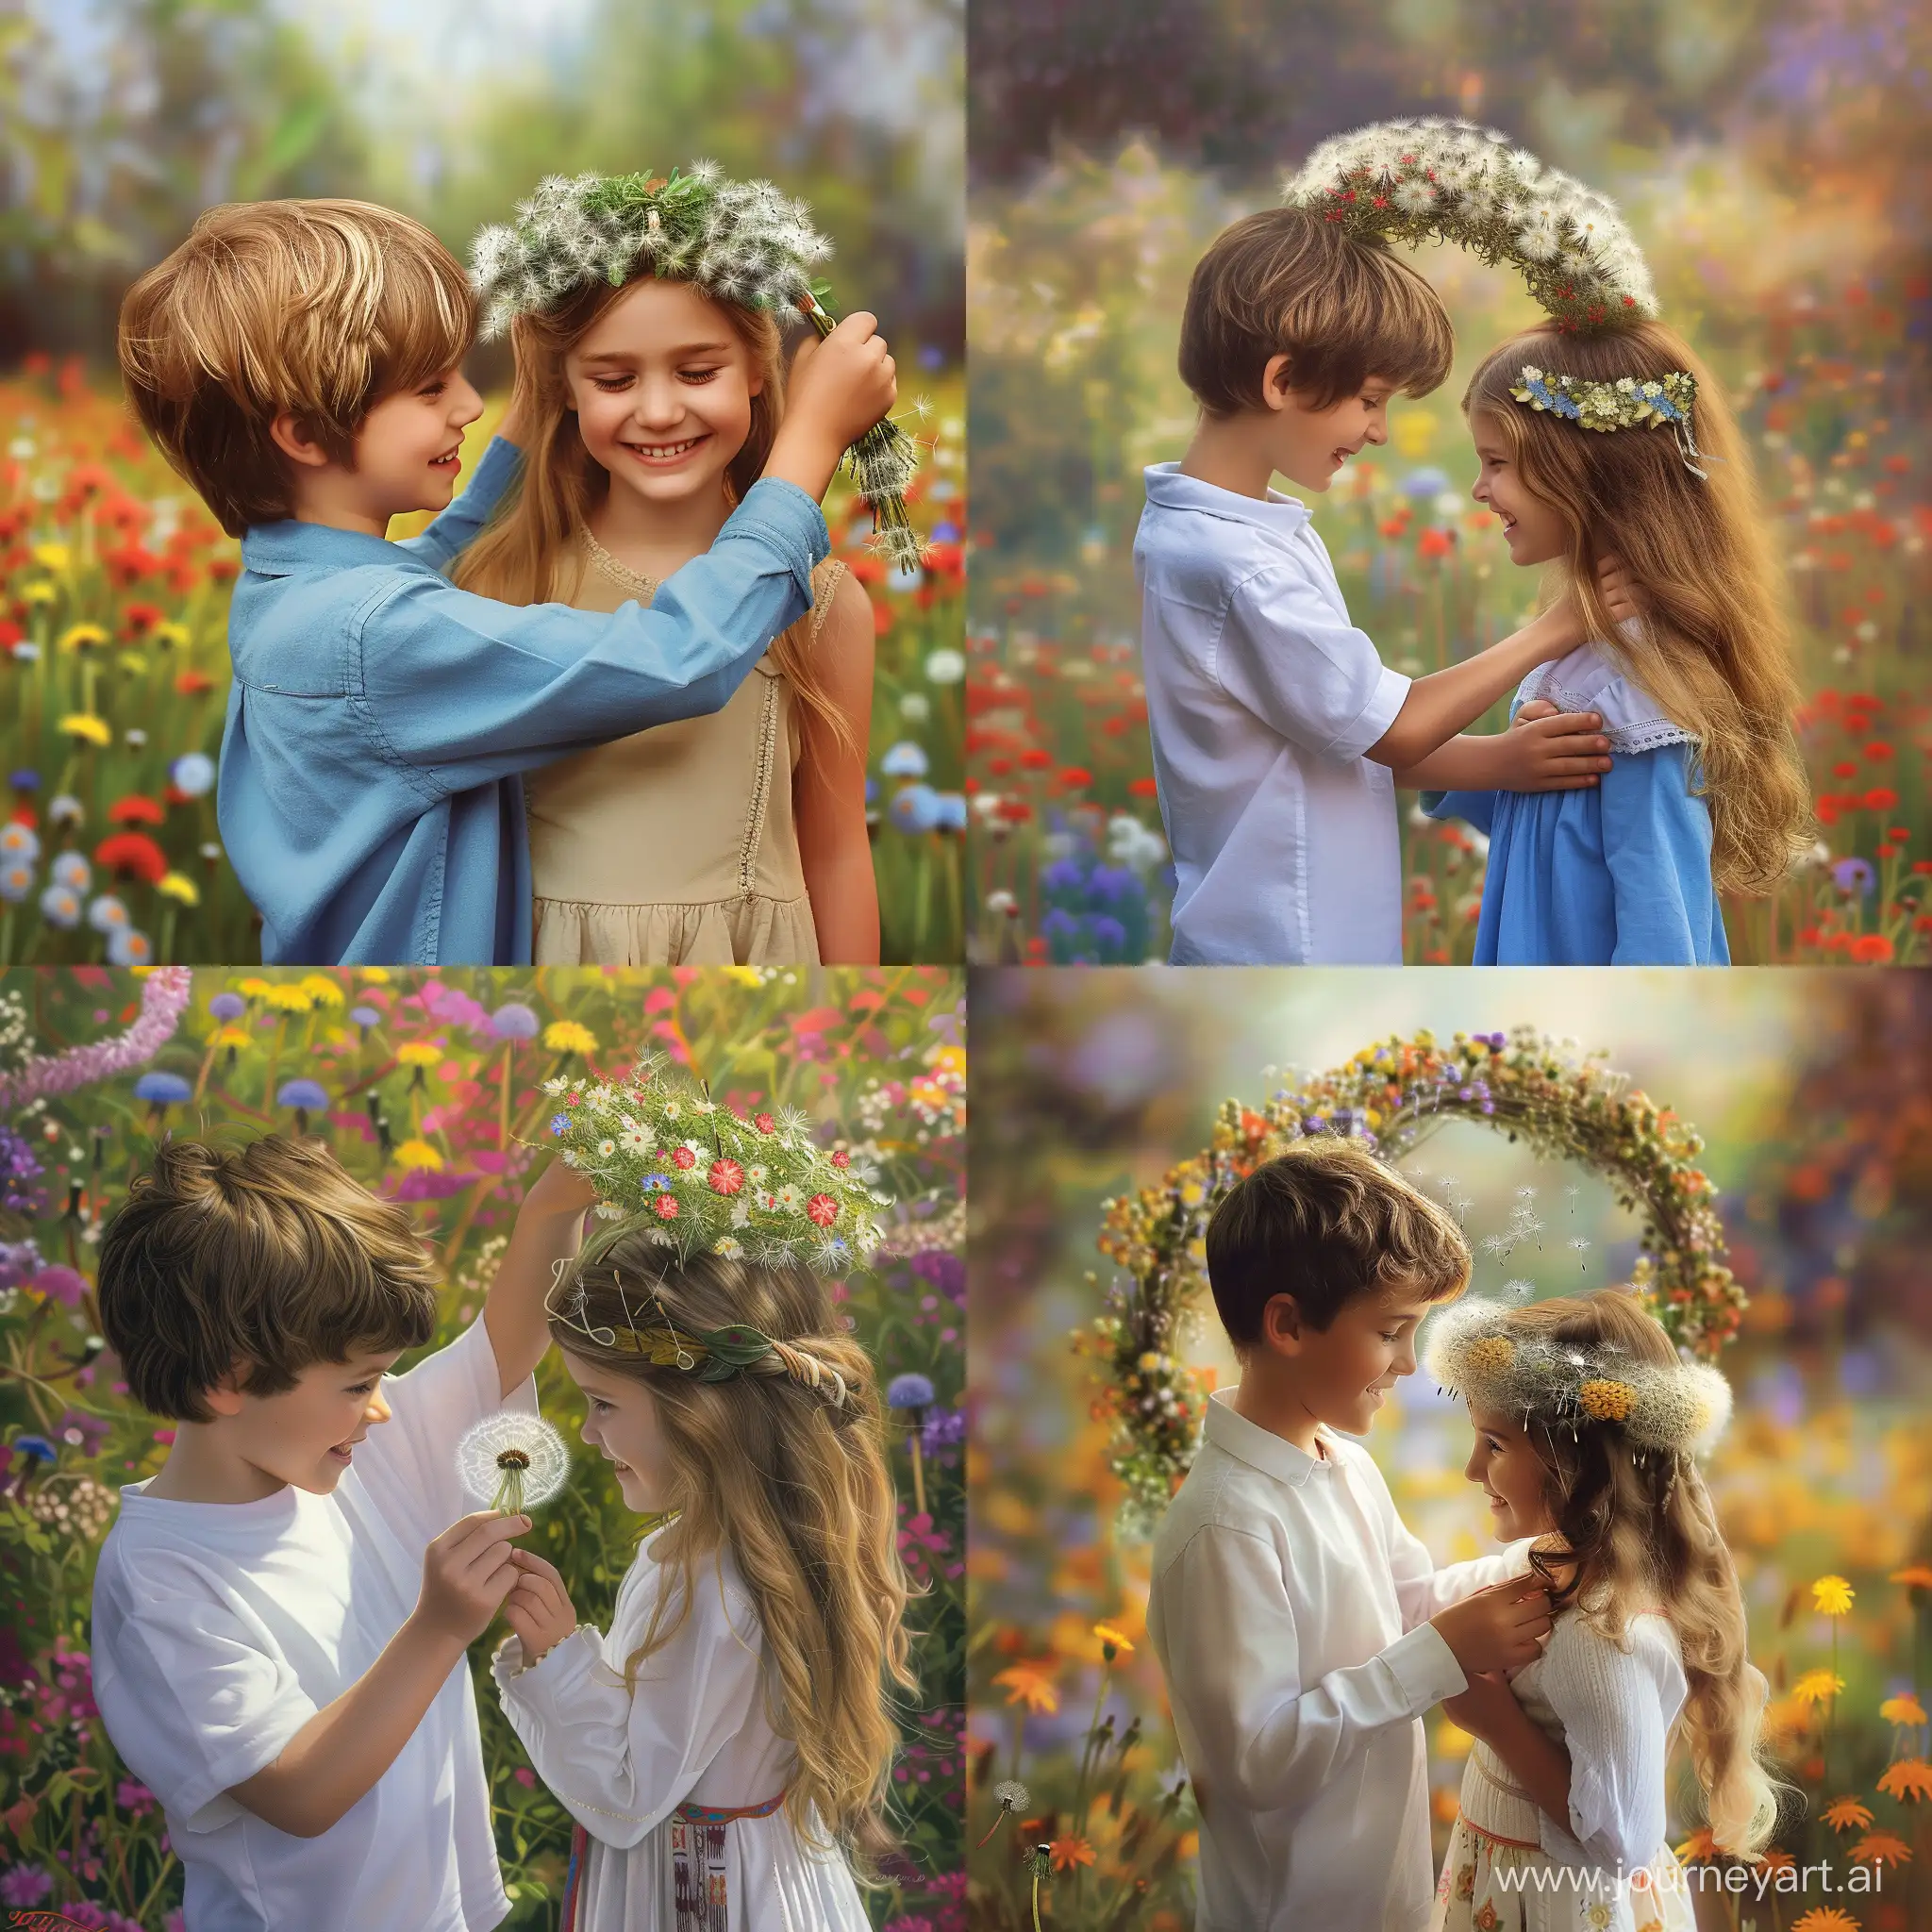 Мальчик торжественно надевает на голову девочки венок из одуванчиков, смеющиеся дети, летний красочный цветущий луг, фотография, гиперреализм, высокое разрешение